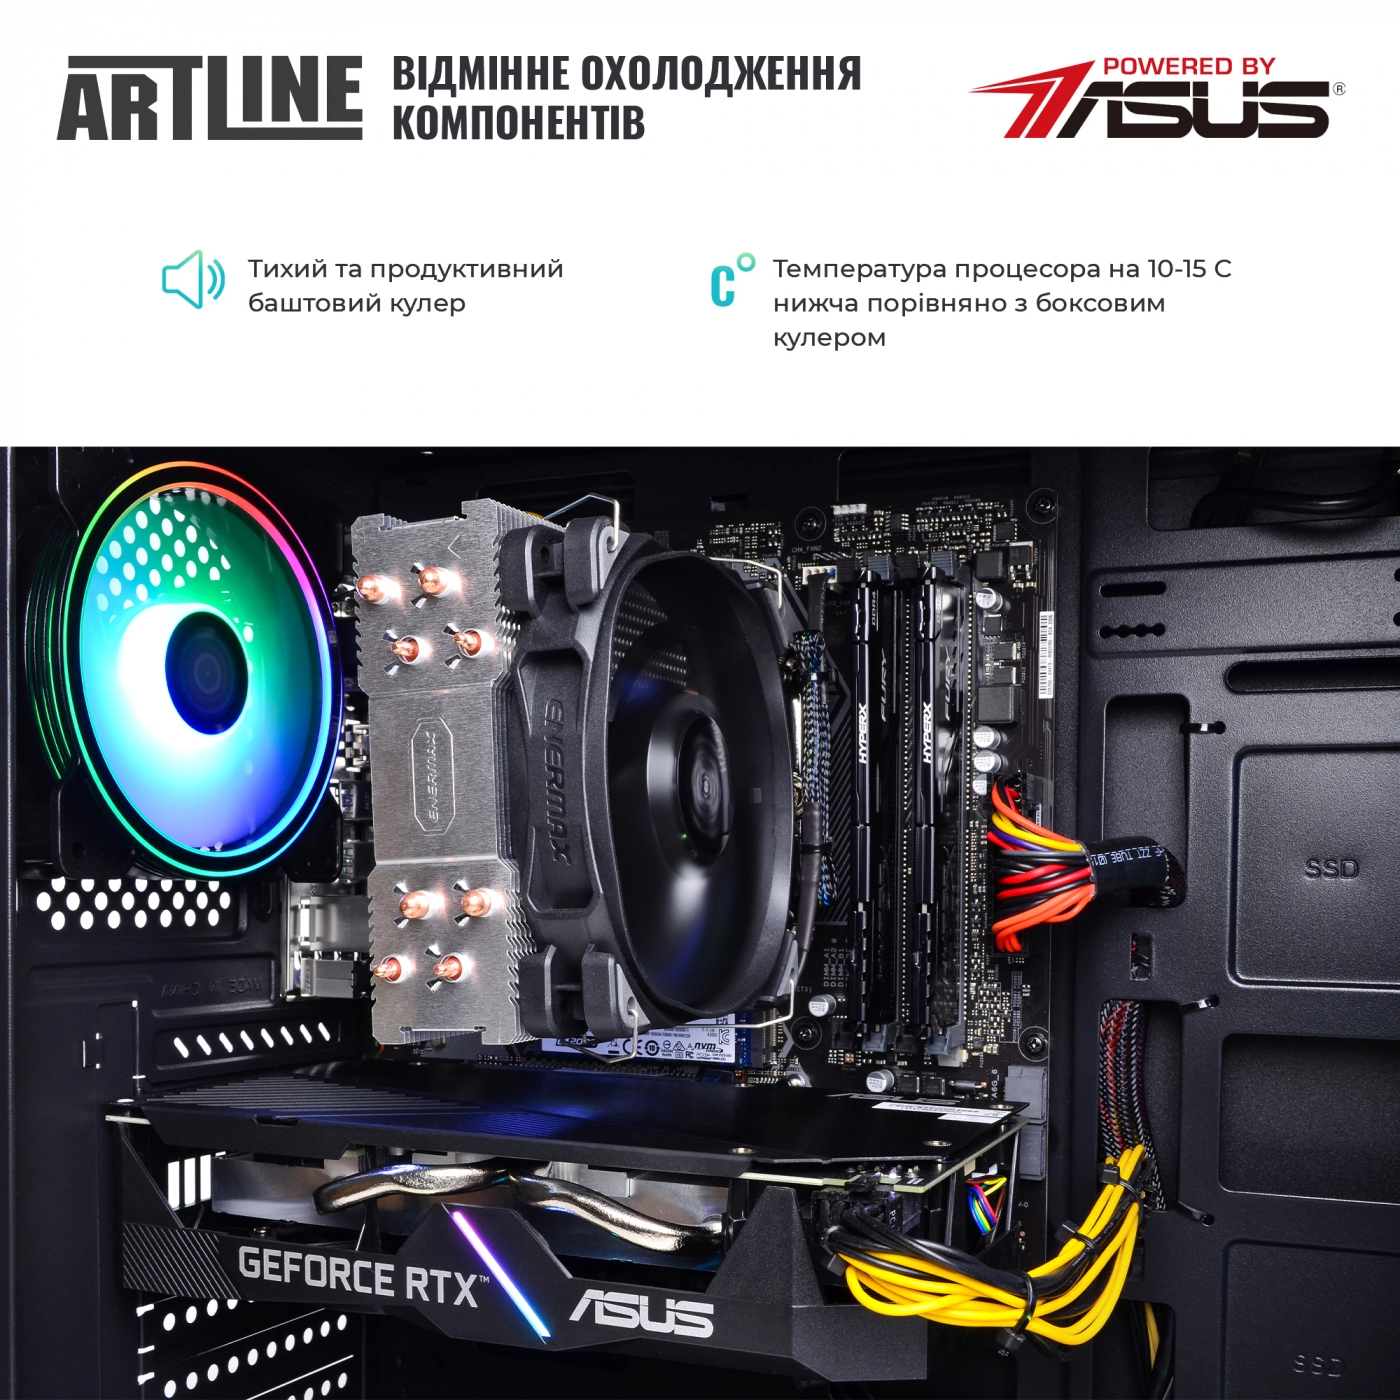 Купить Компьютер ARTLINE Gaming X53v33 - фото 7